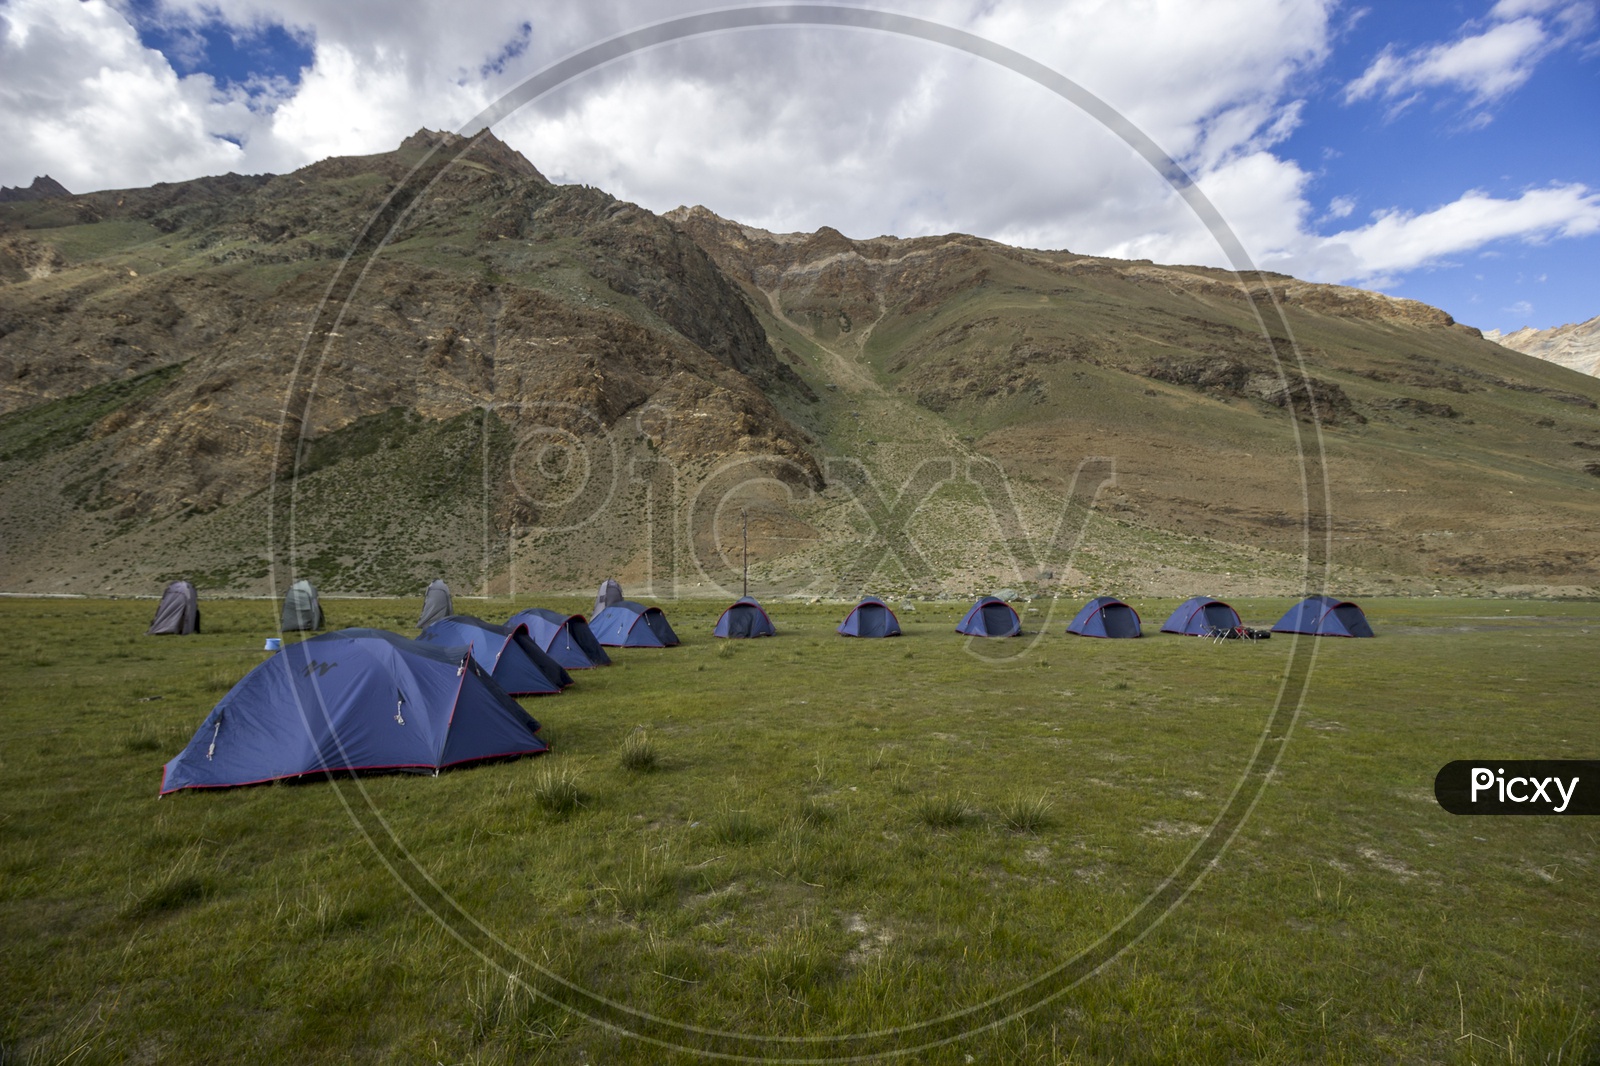 Camping by Himalayas